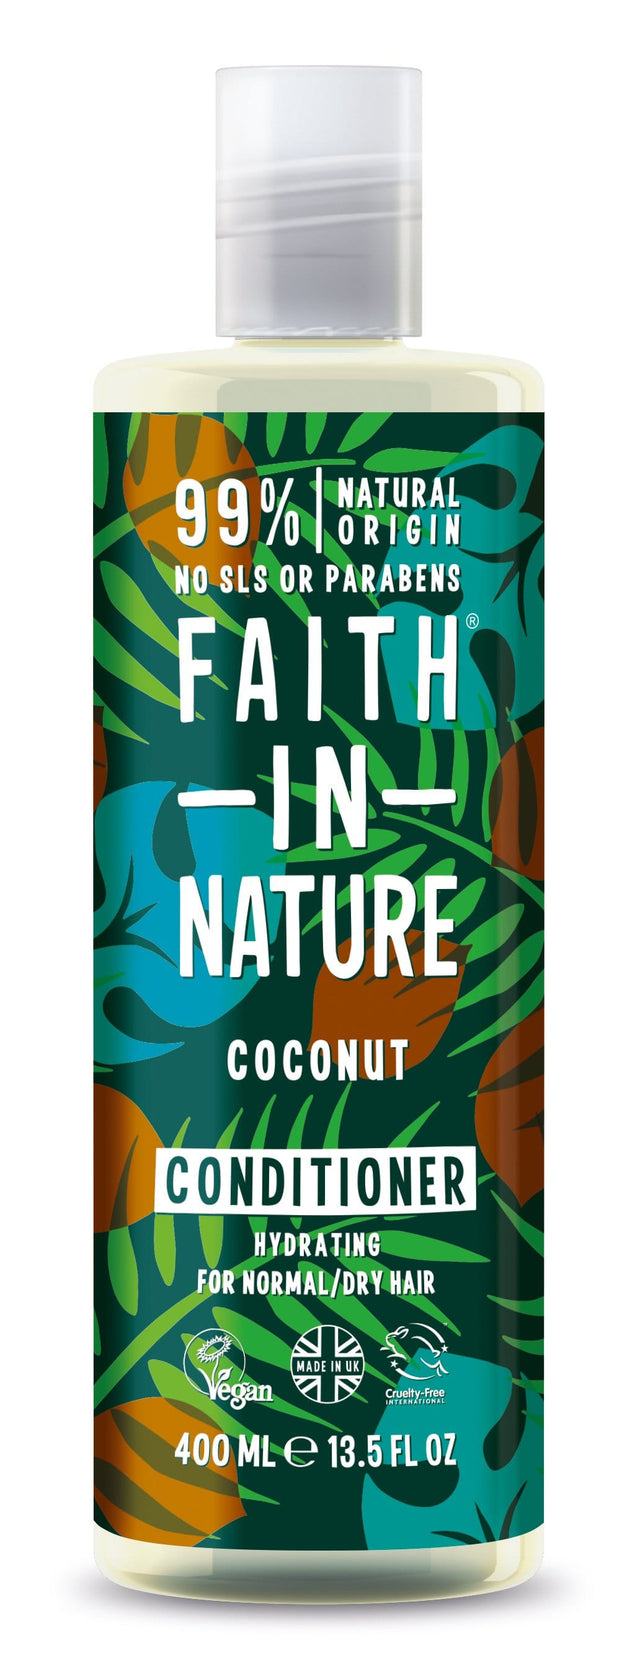 Faith in Nature Coconut Conditioner, 400ml